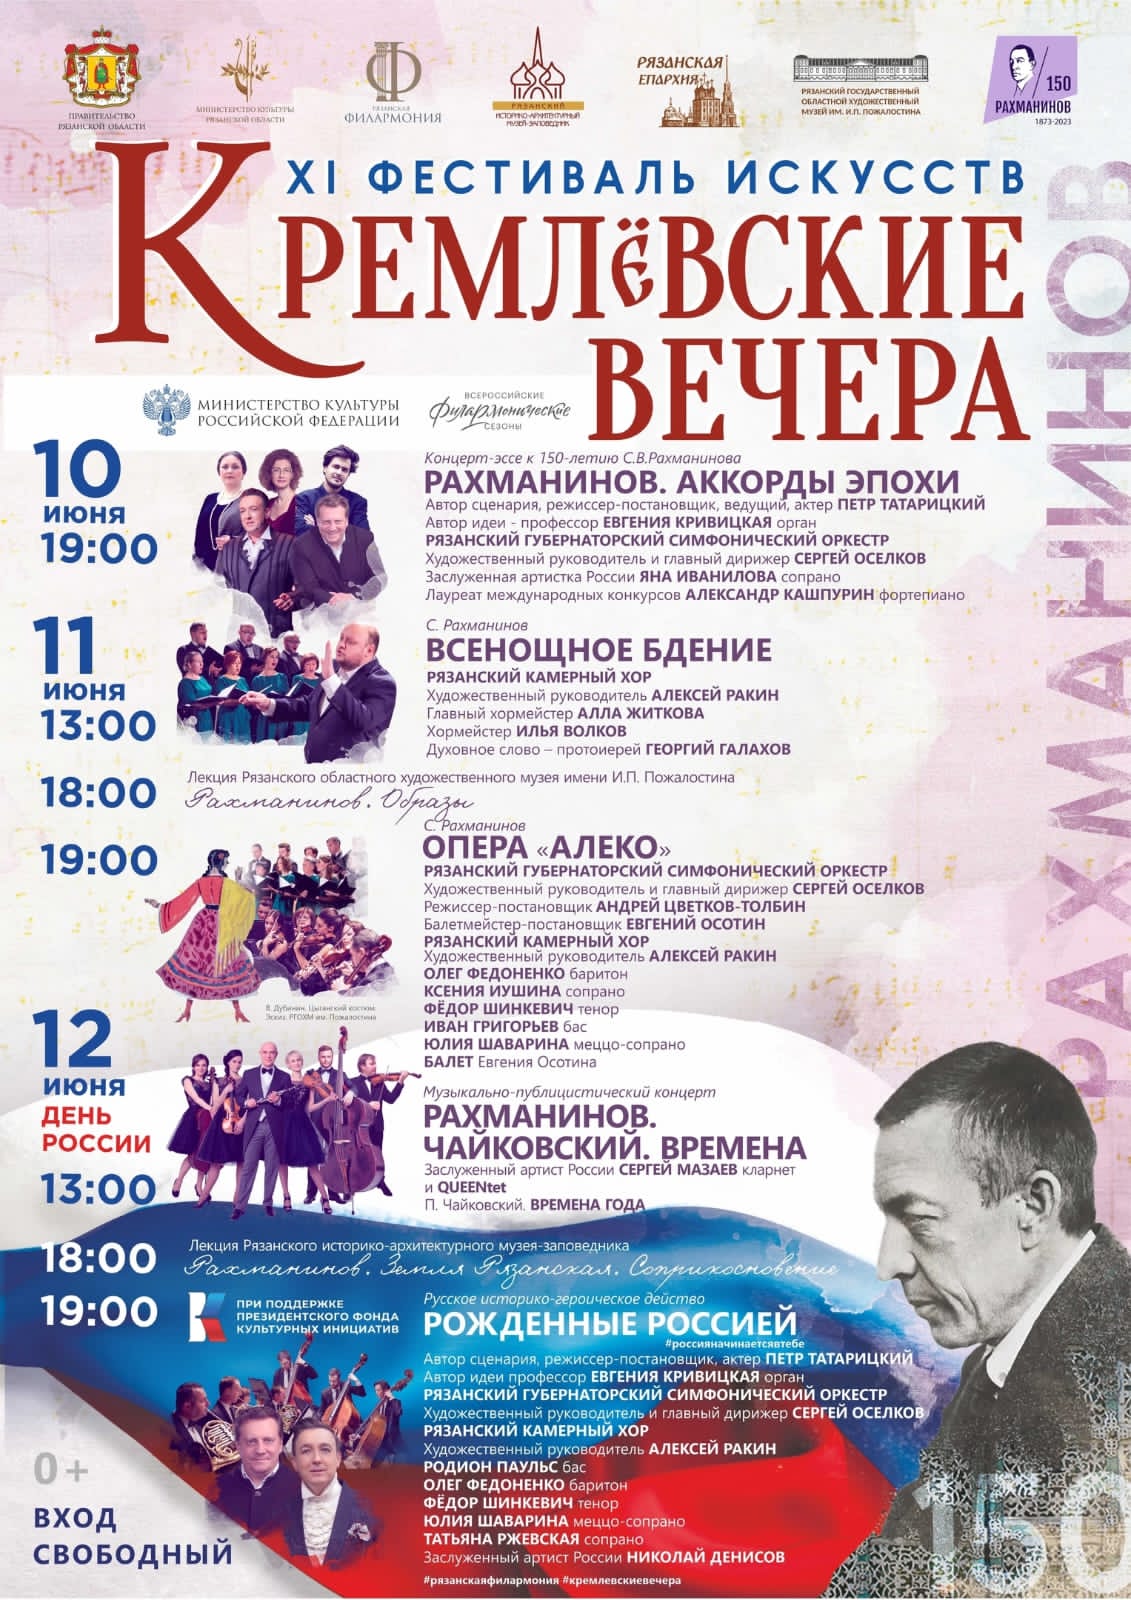 Опубликована программа XI Фестиваля искусств «Кремлёвские вечера» в Рязани